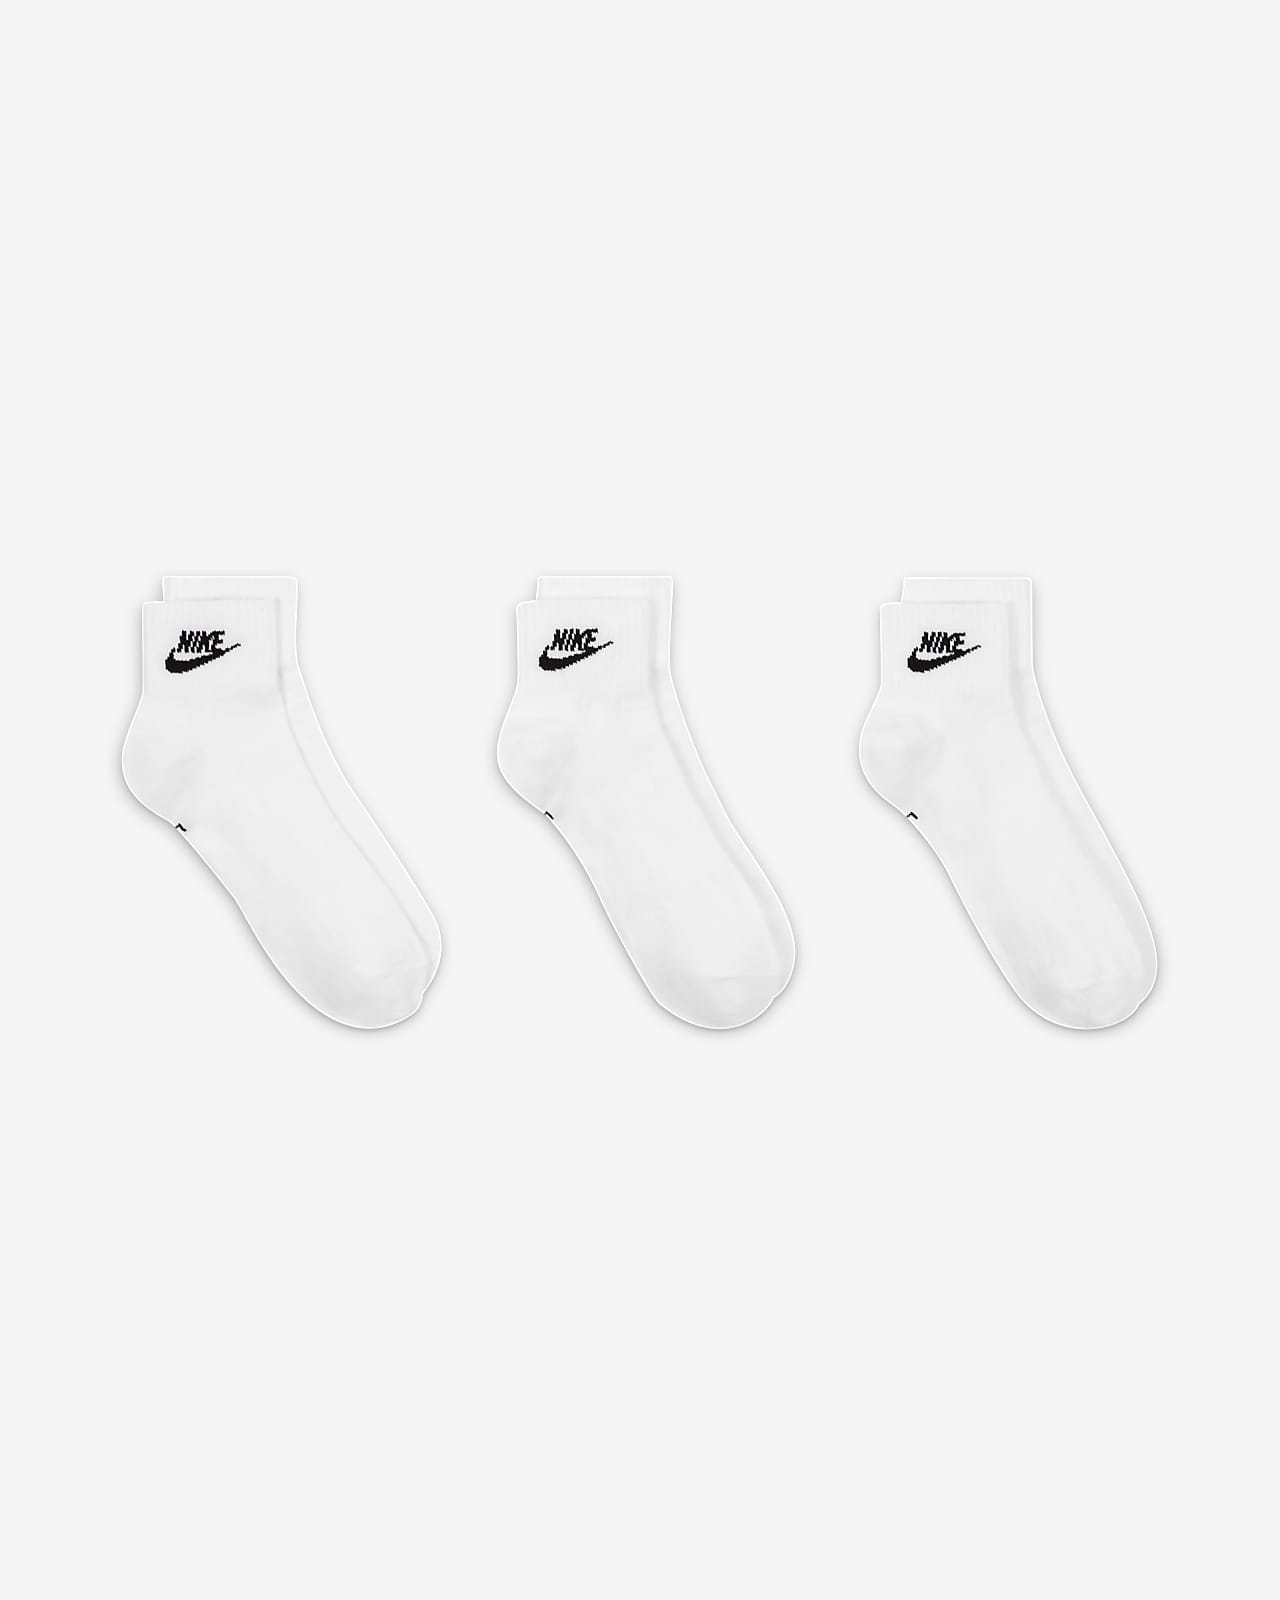 Meias pelo tornozelo Nike Everyday Essential (3 pares)